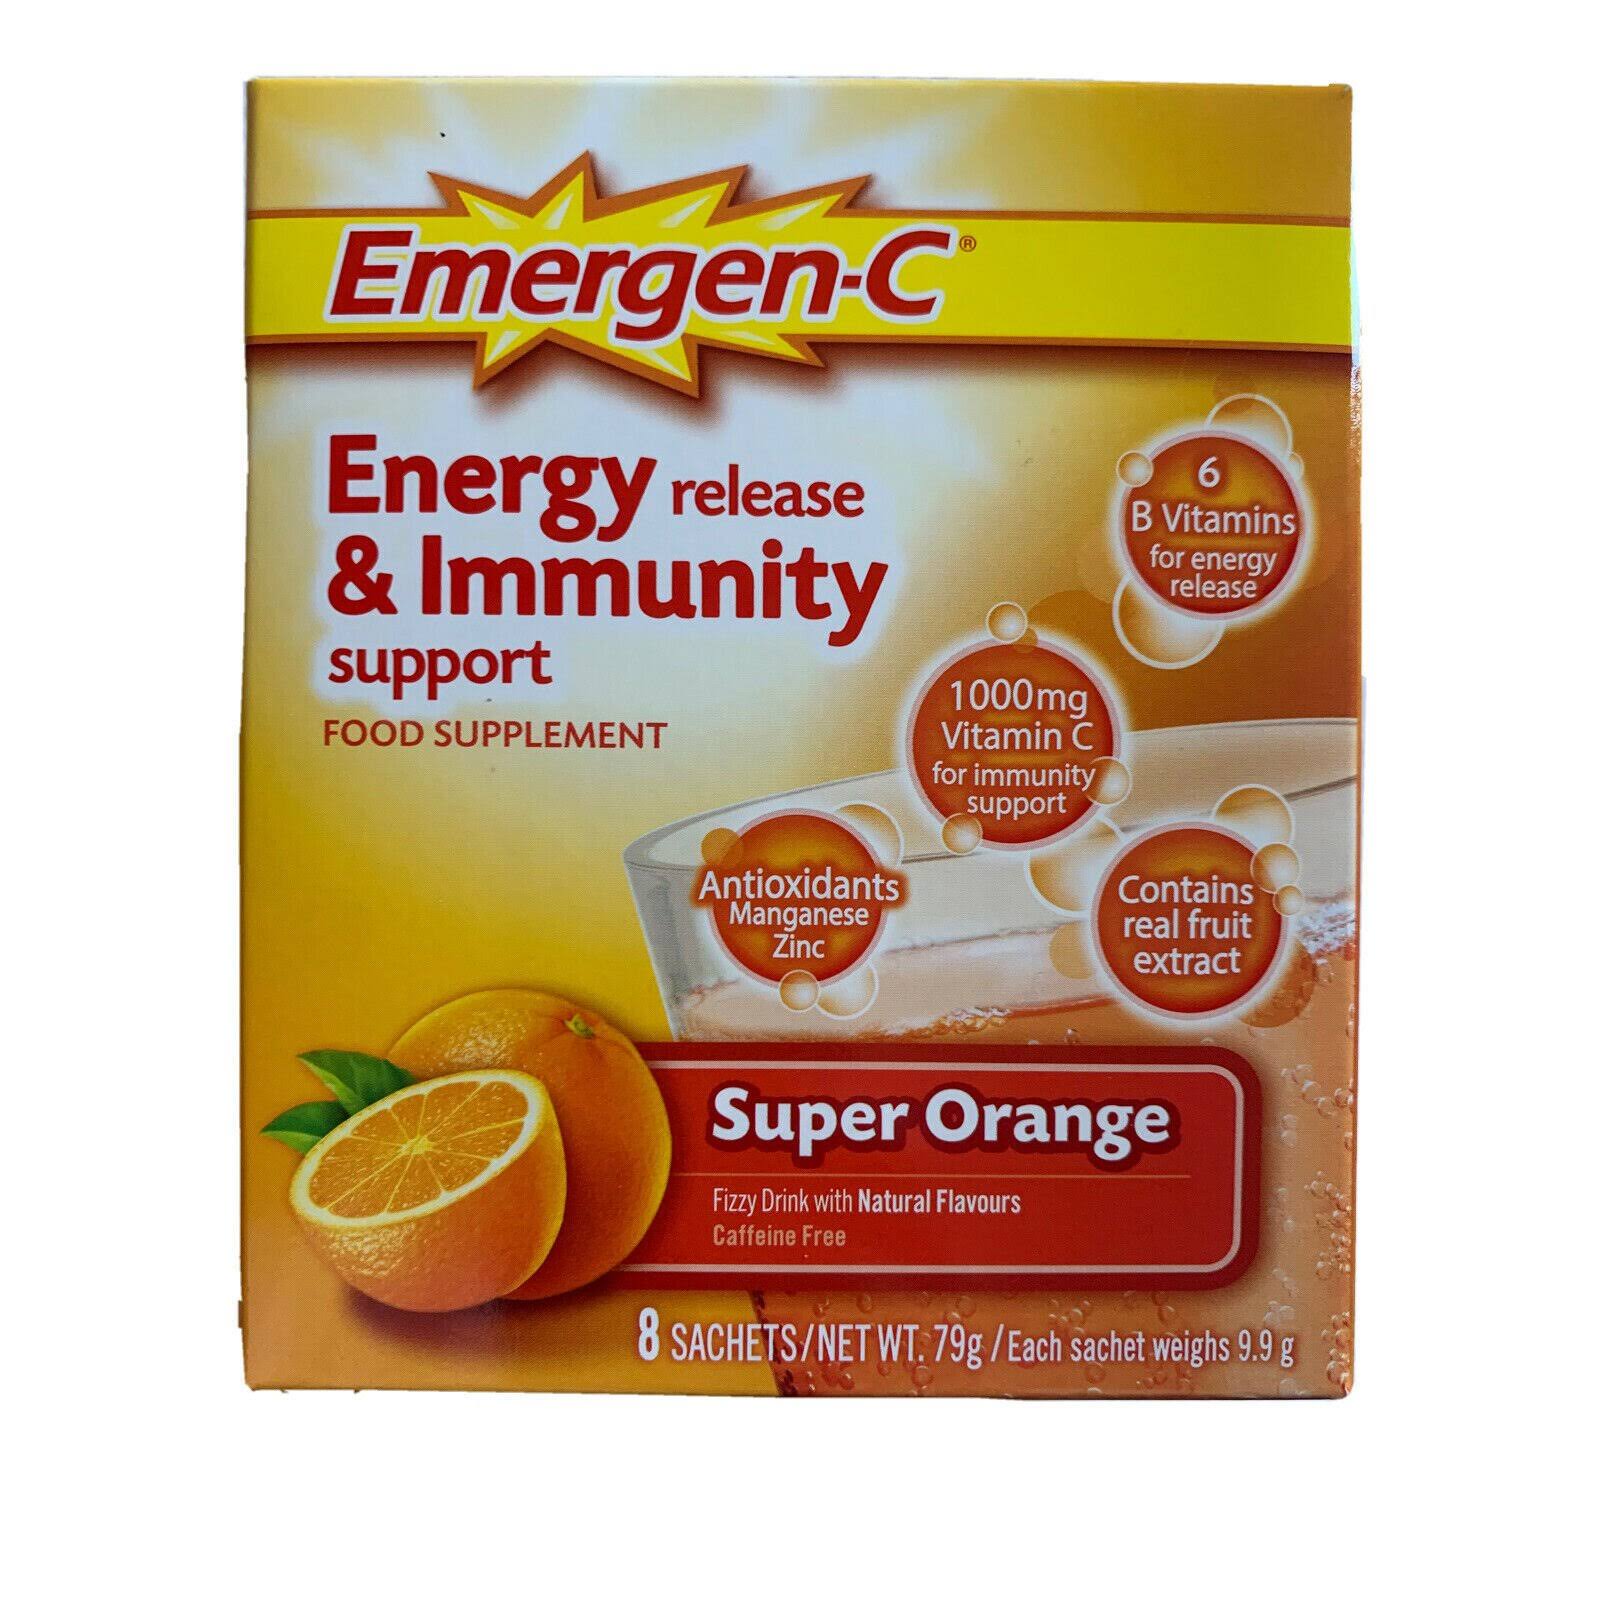 Emergen-C 1000mg Vitamin C Dietary Supplement - Super Orange, 30 Pack